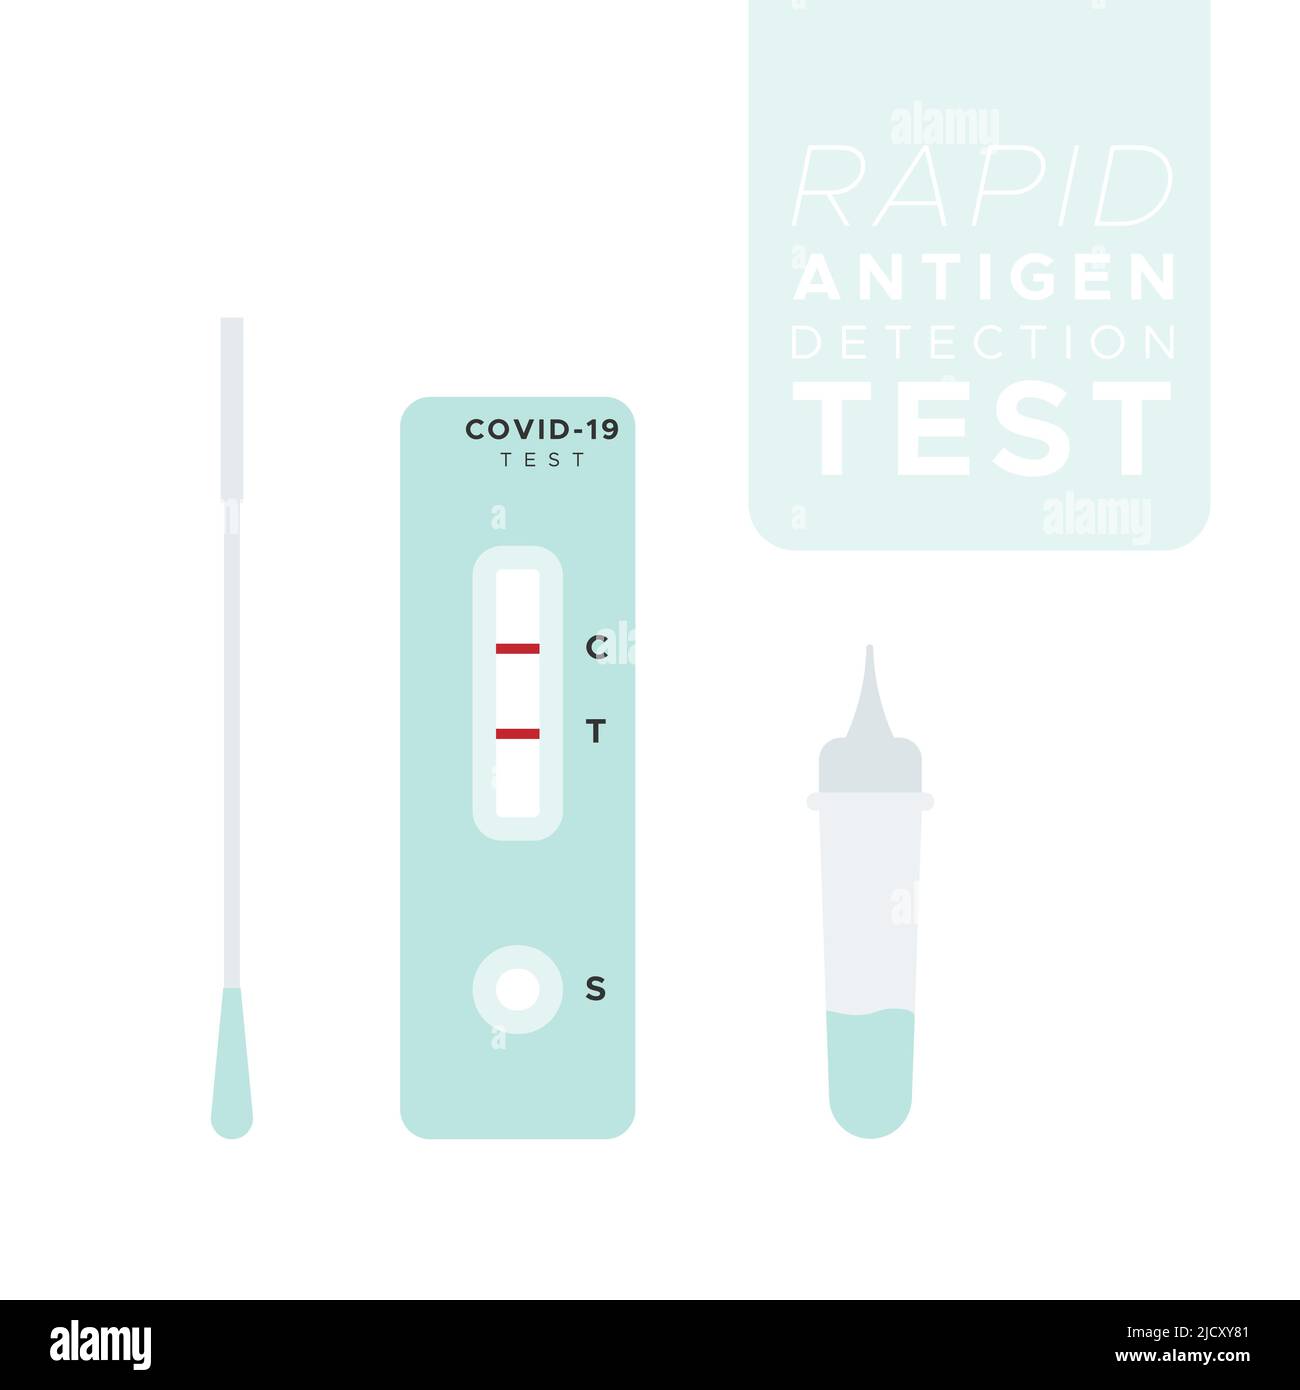 Testkit für die schnelle Antigen-Erkennung. Test mit Nasenabstrich. Covid 19. Vektorgrafik, flaches Design Stock Vektor